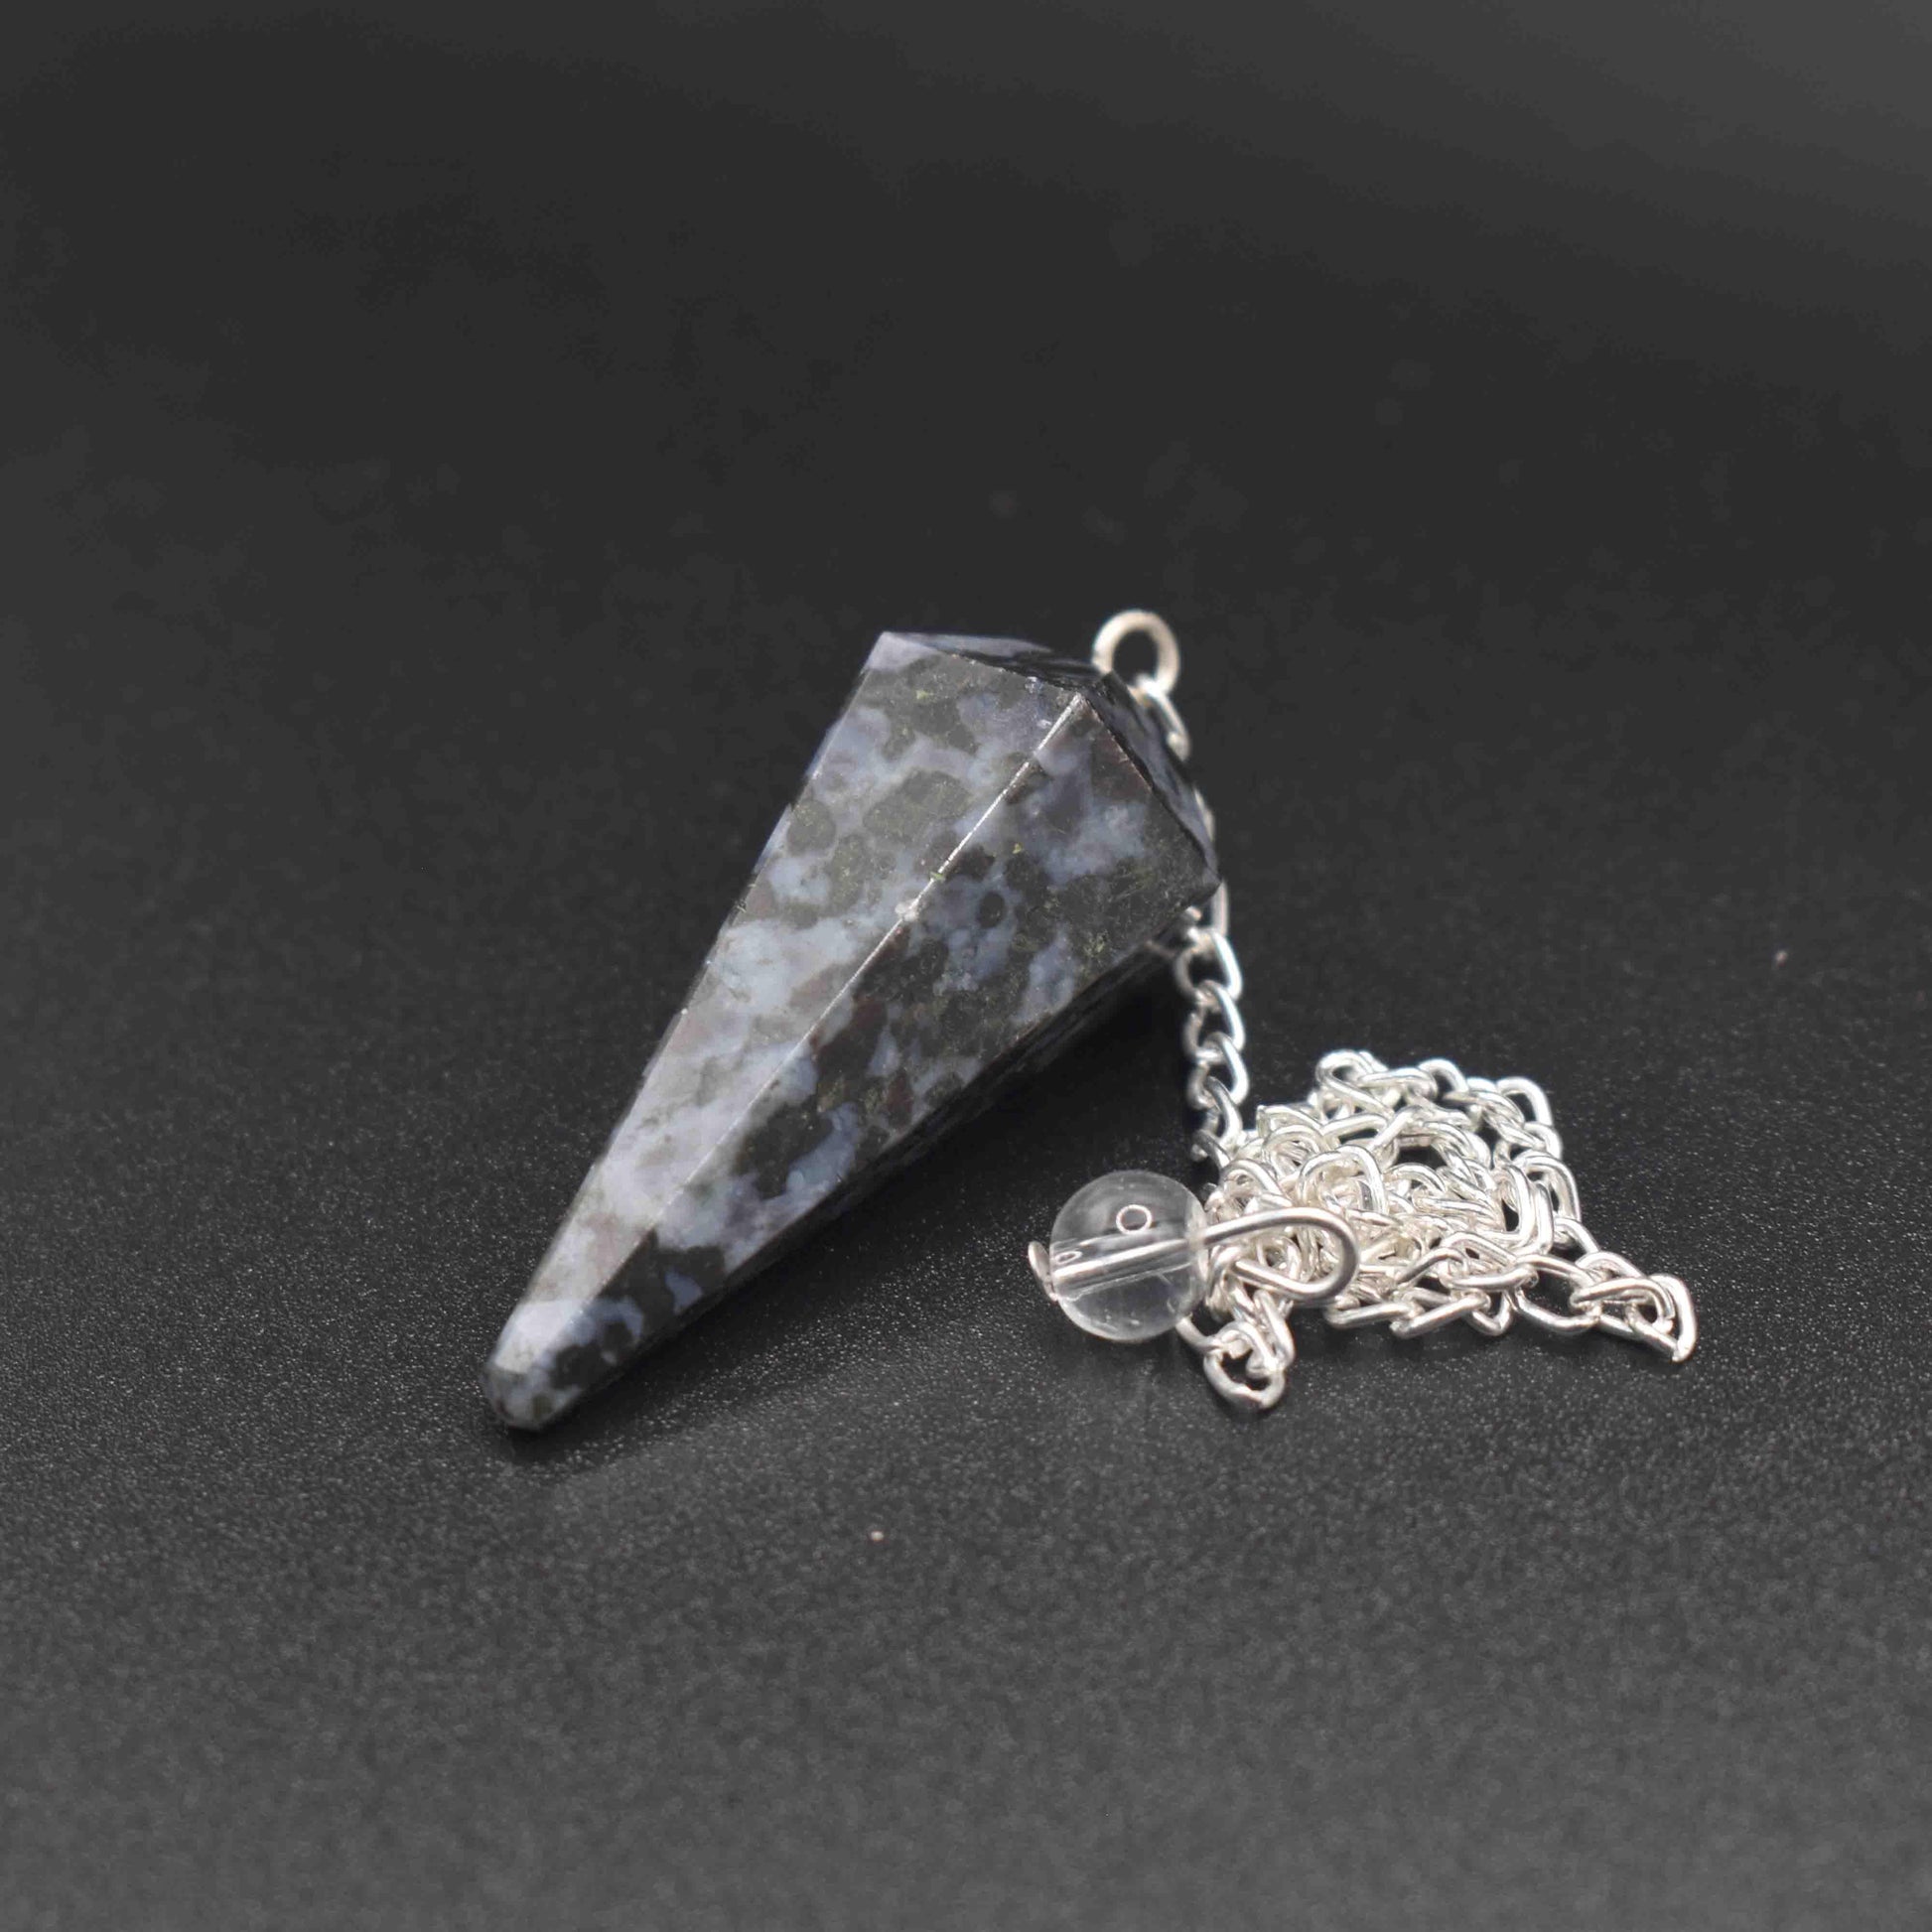 Snowflake Obsidian Pendulum - Mystic Gleam